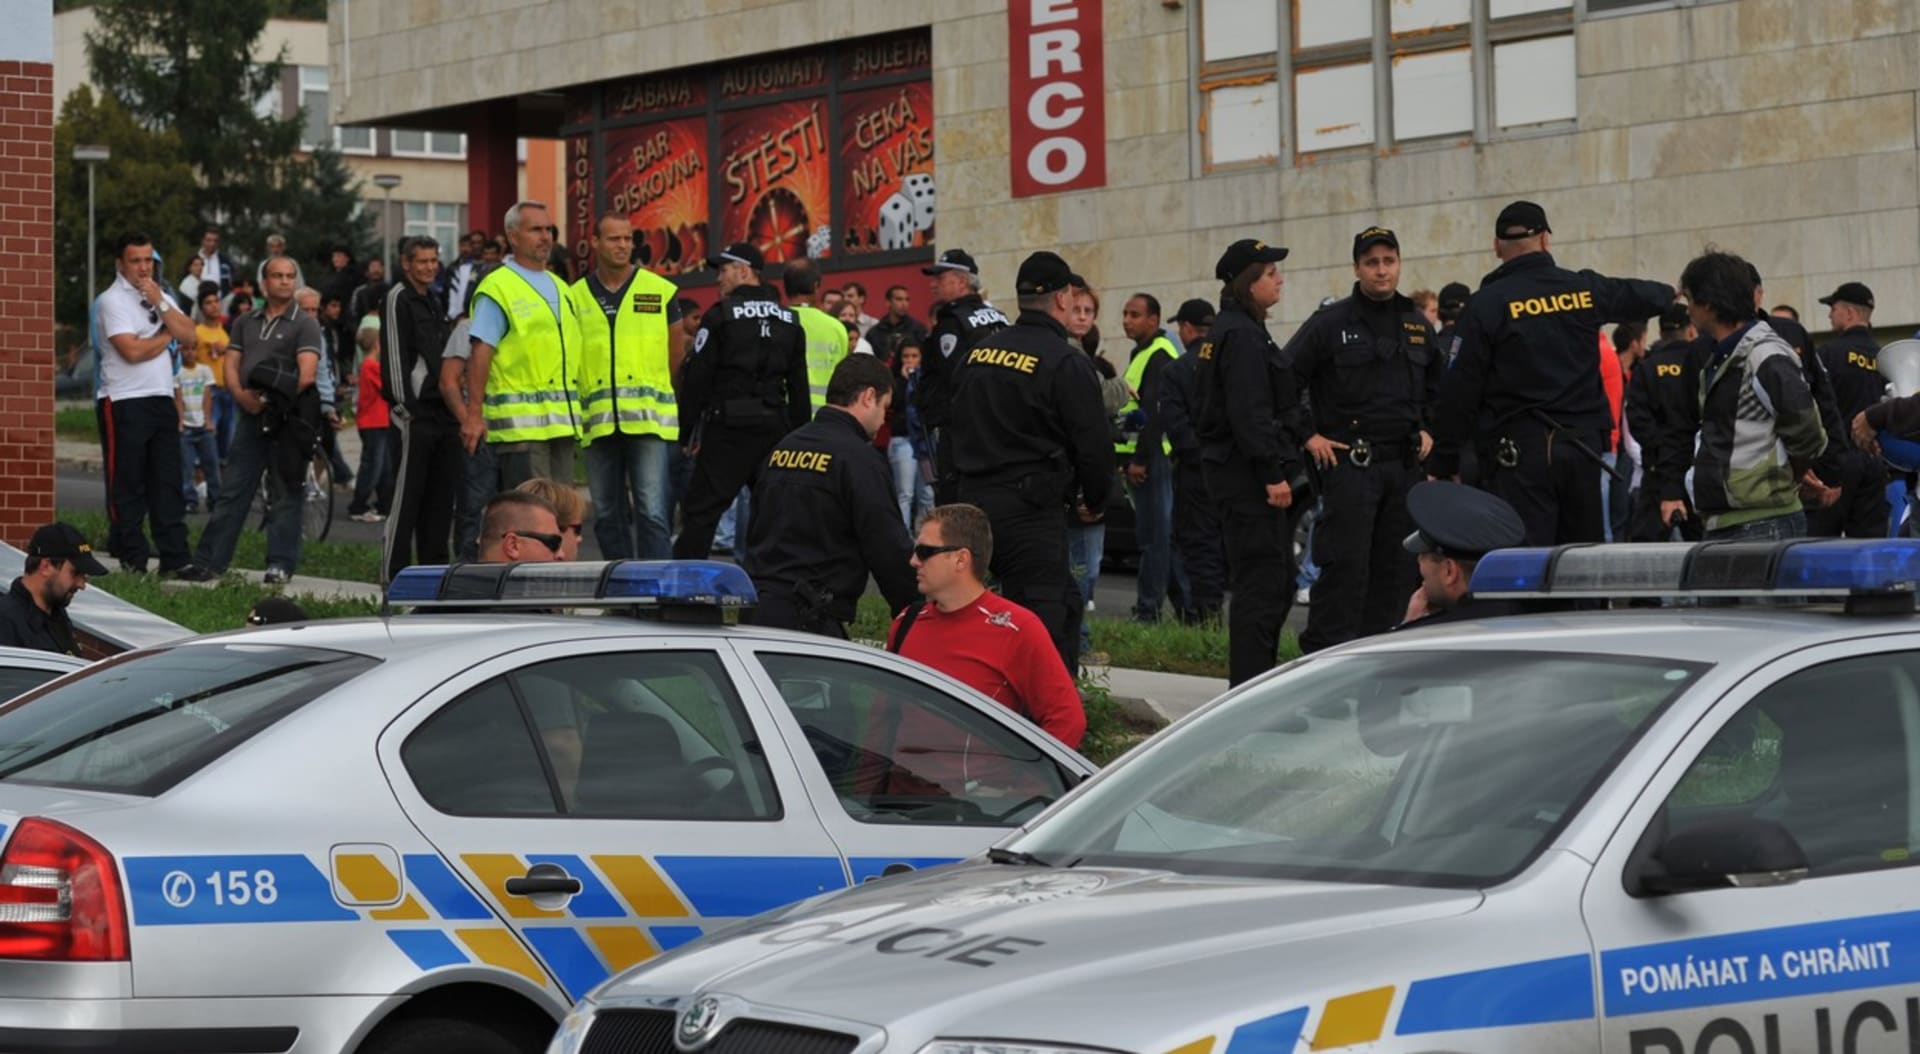 Účastníci protestu v Krupce se vydali na pochod městem. Policie na akci dohlíží. (ilustrační foto)